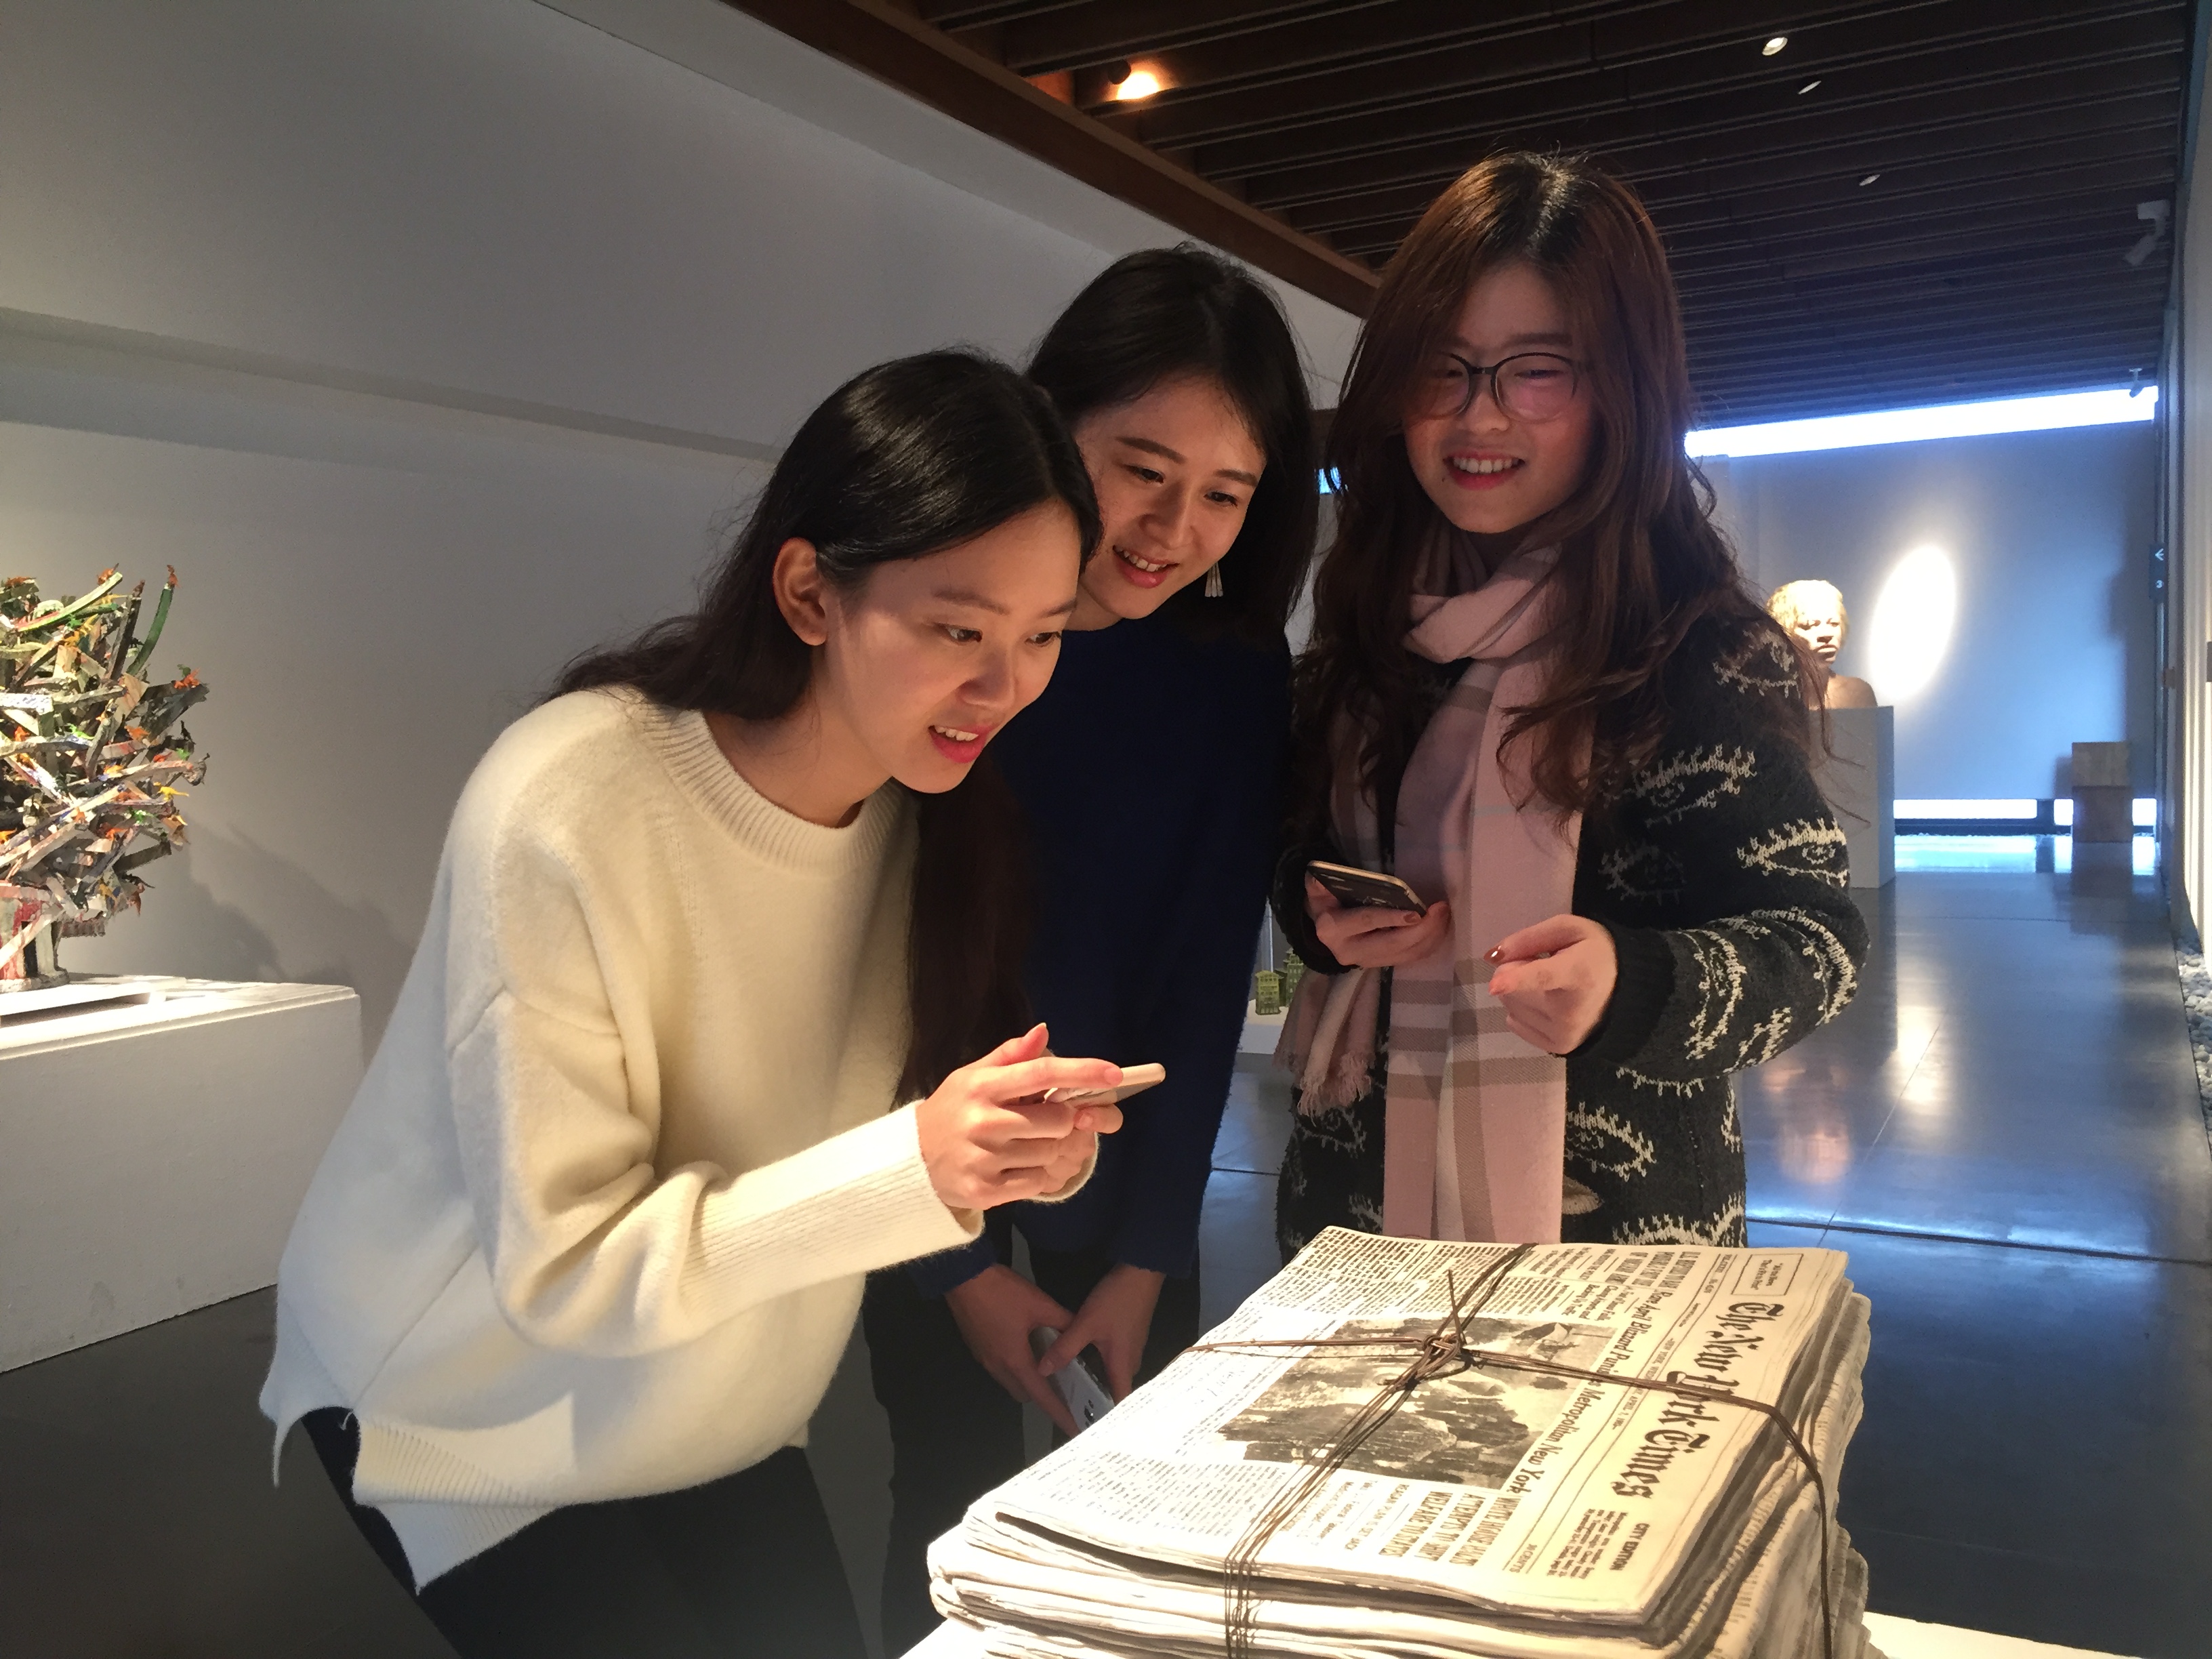 住在三峽的呂小姐（左1）特地與朋友來陶博館體驗實境解謎遊戲，邊玩邊欣賞世界級的陶藝雙年展很有意義。